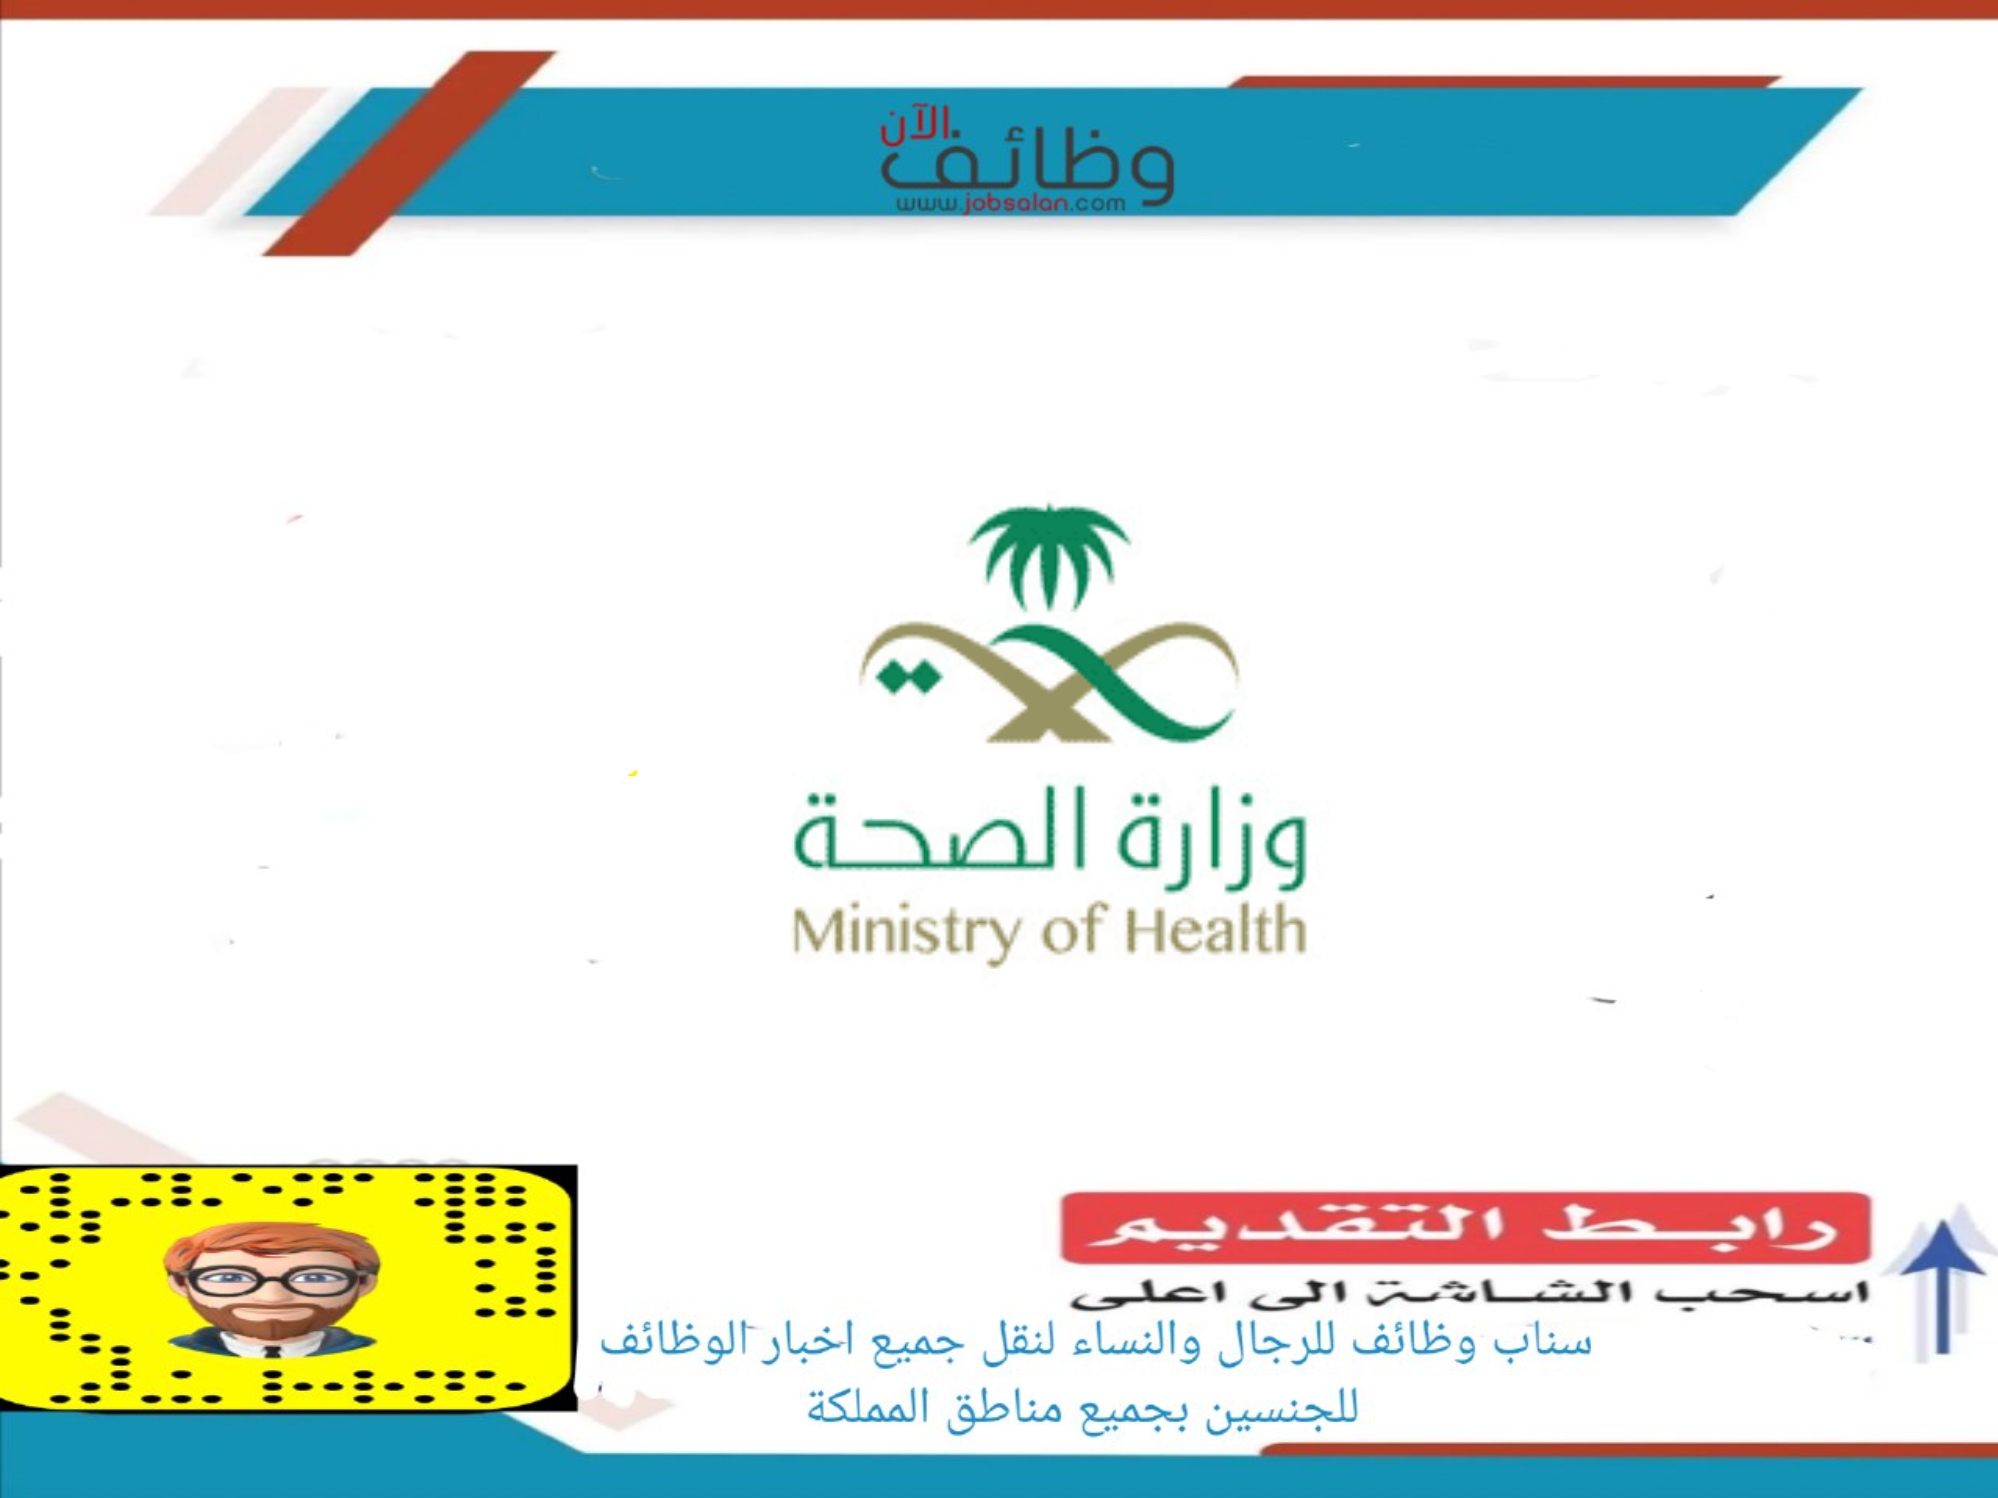 وزارة الصحة - اسماء المرشحين والمرشحات لوظائف الأخصائيين غير الأطباء والصيادلة في وزارة الصحة